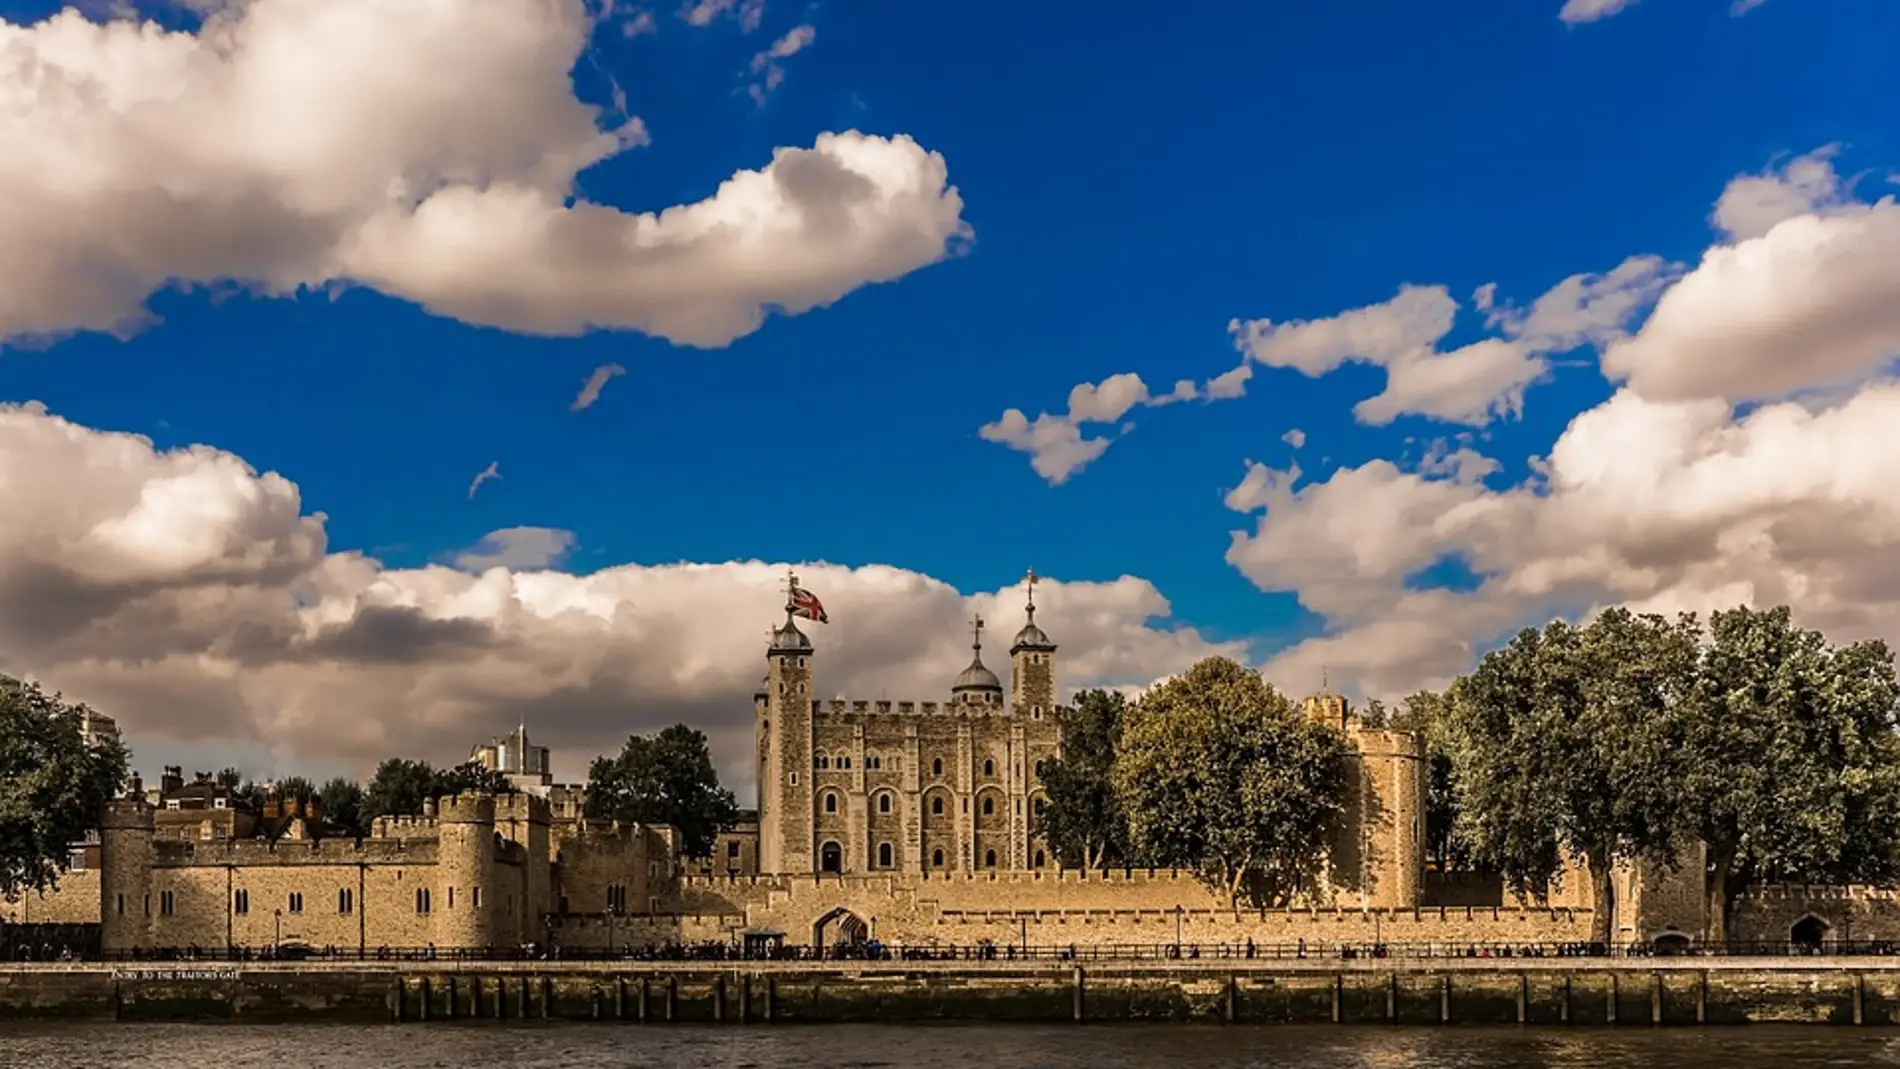 Estas son algunas de las historias y leyendas de la Torre de Londres